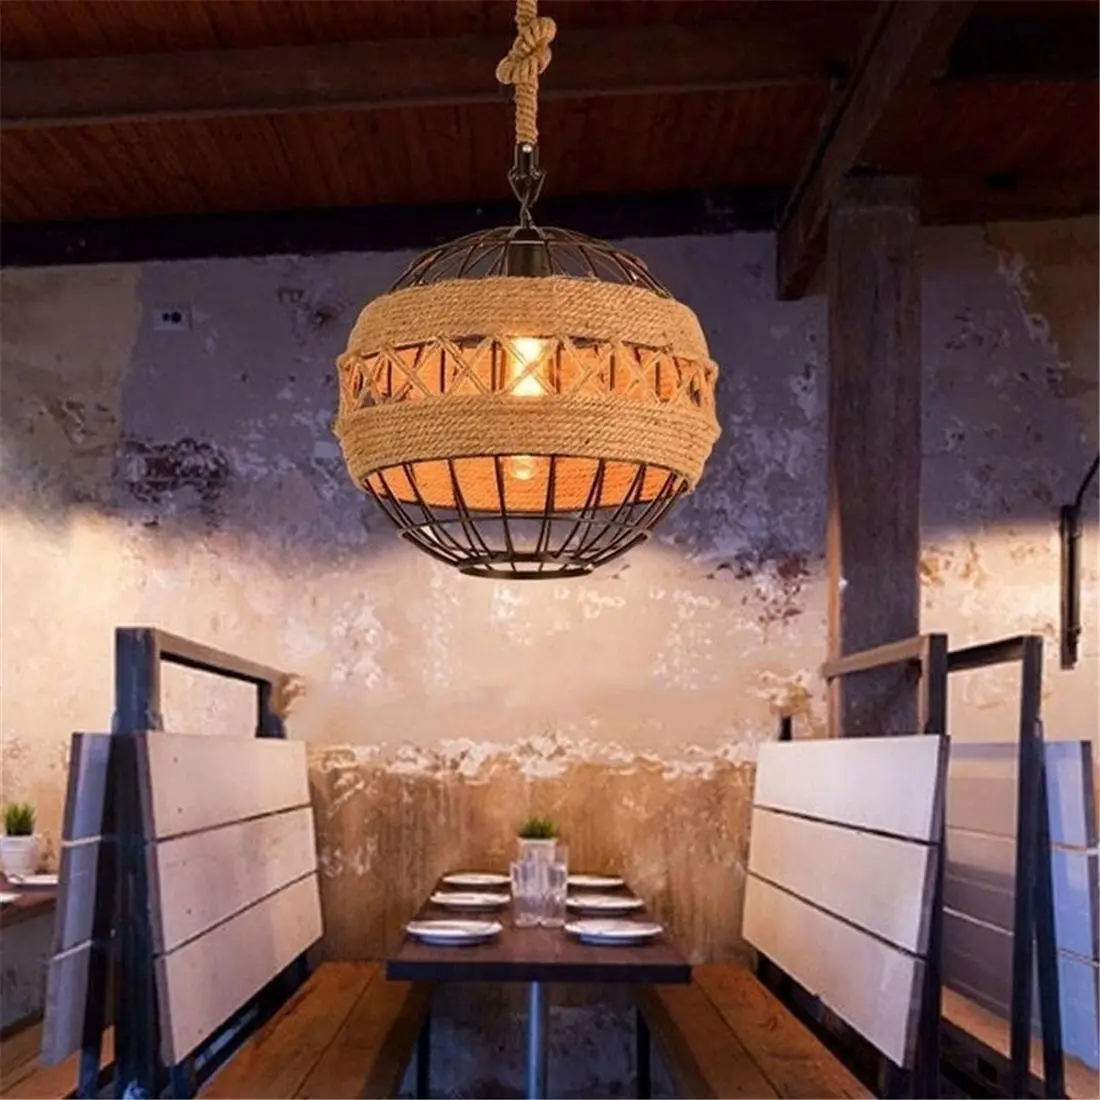 Кантри Ретро тесьма промышленный ветер люстра интернет кафе ресторан кафе бар мяч лампы с уникальным стилем